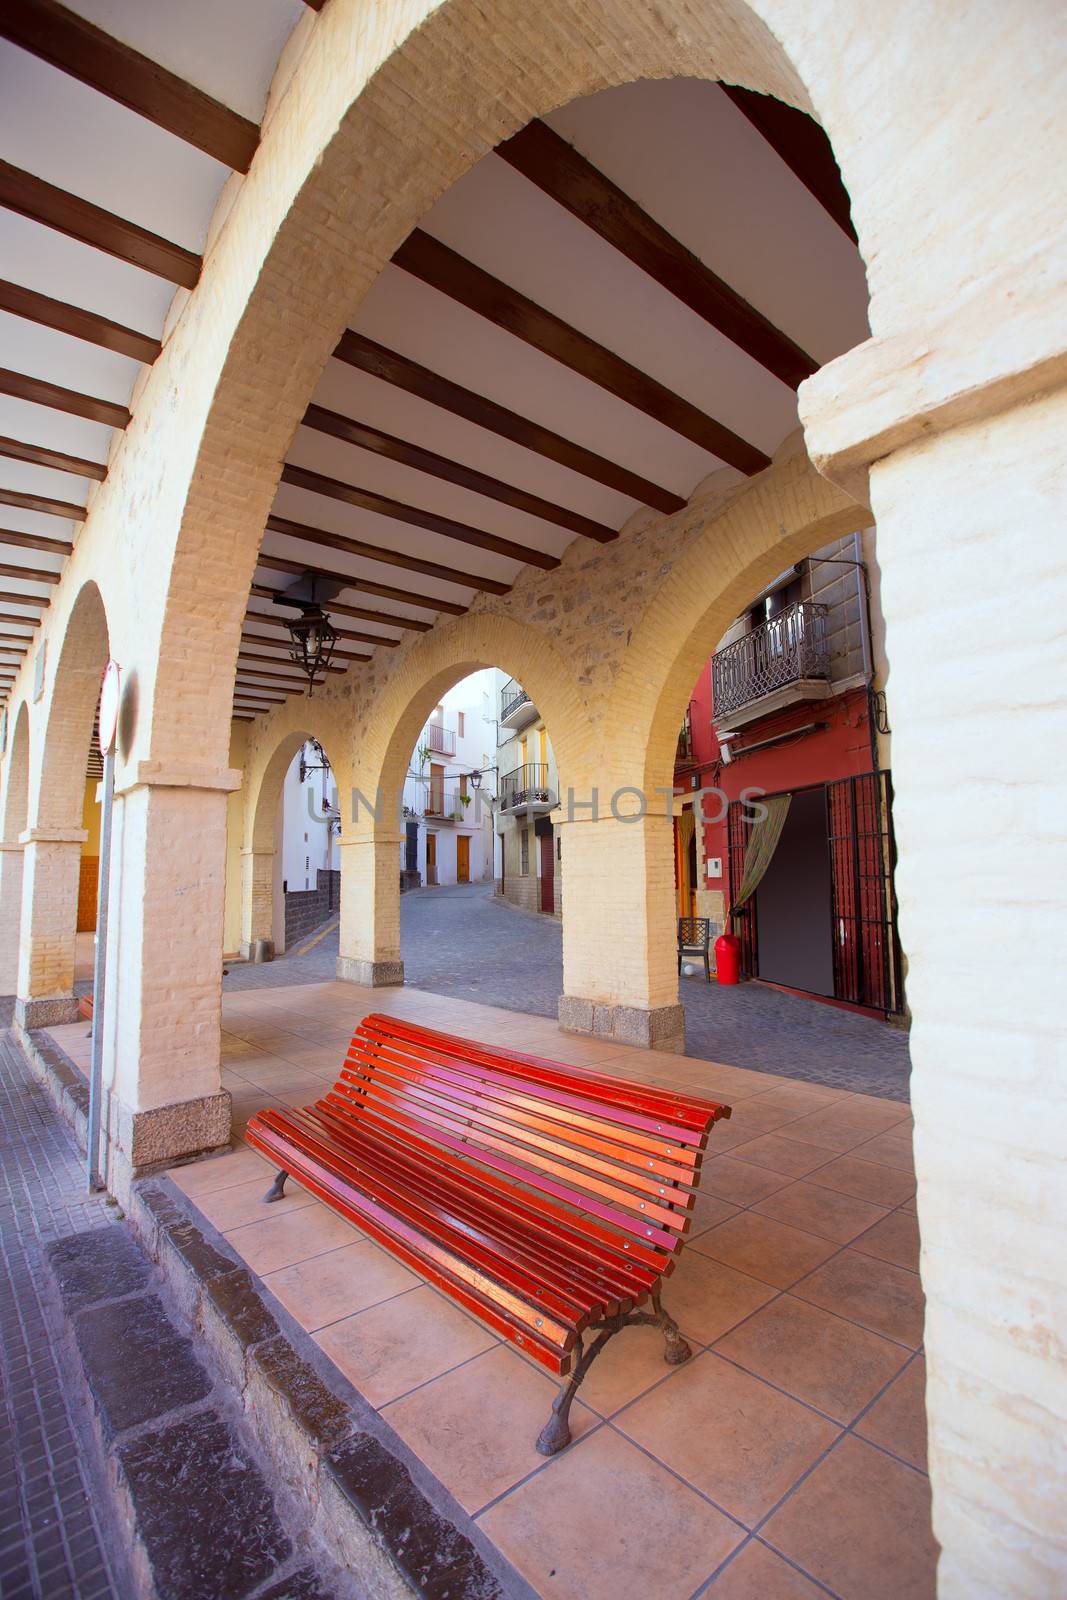 Jerica Castellon village arches in Alto Palancia of Spain Valencian Community